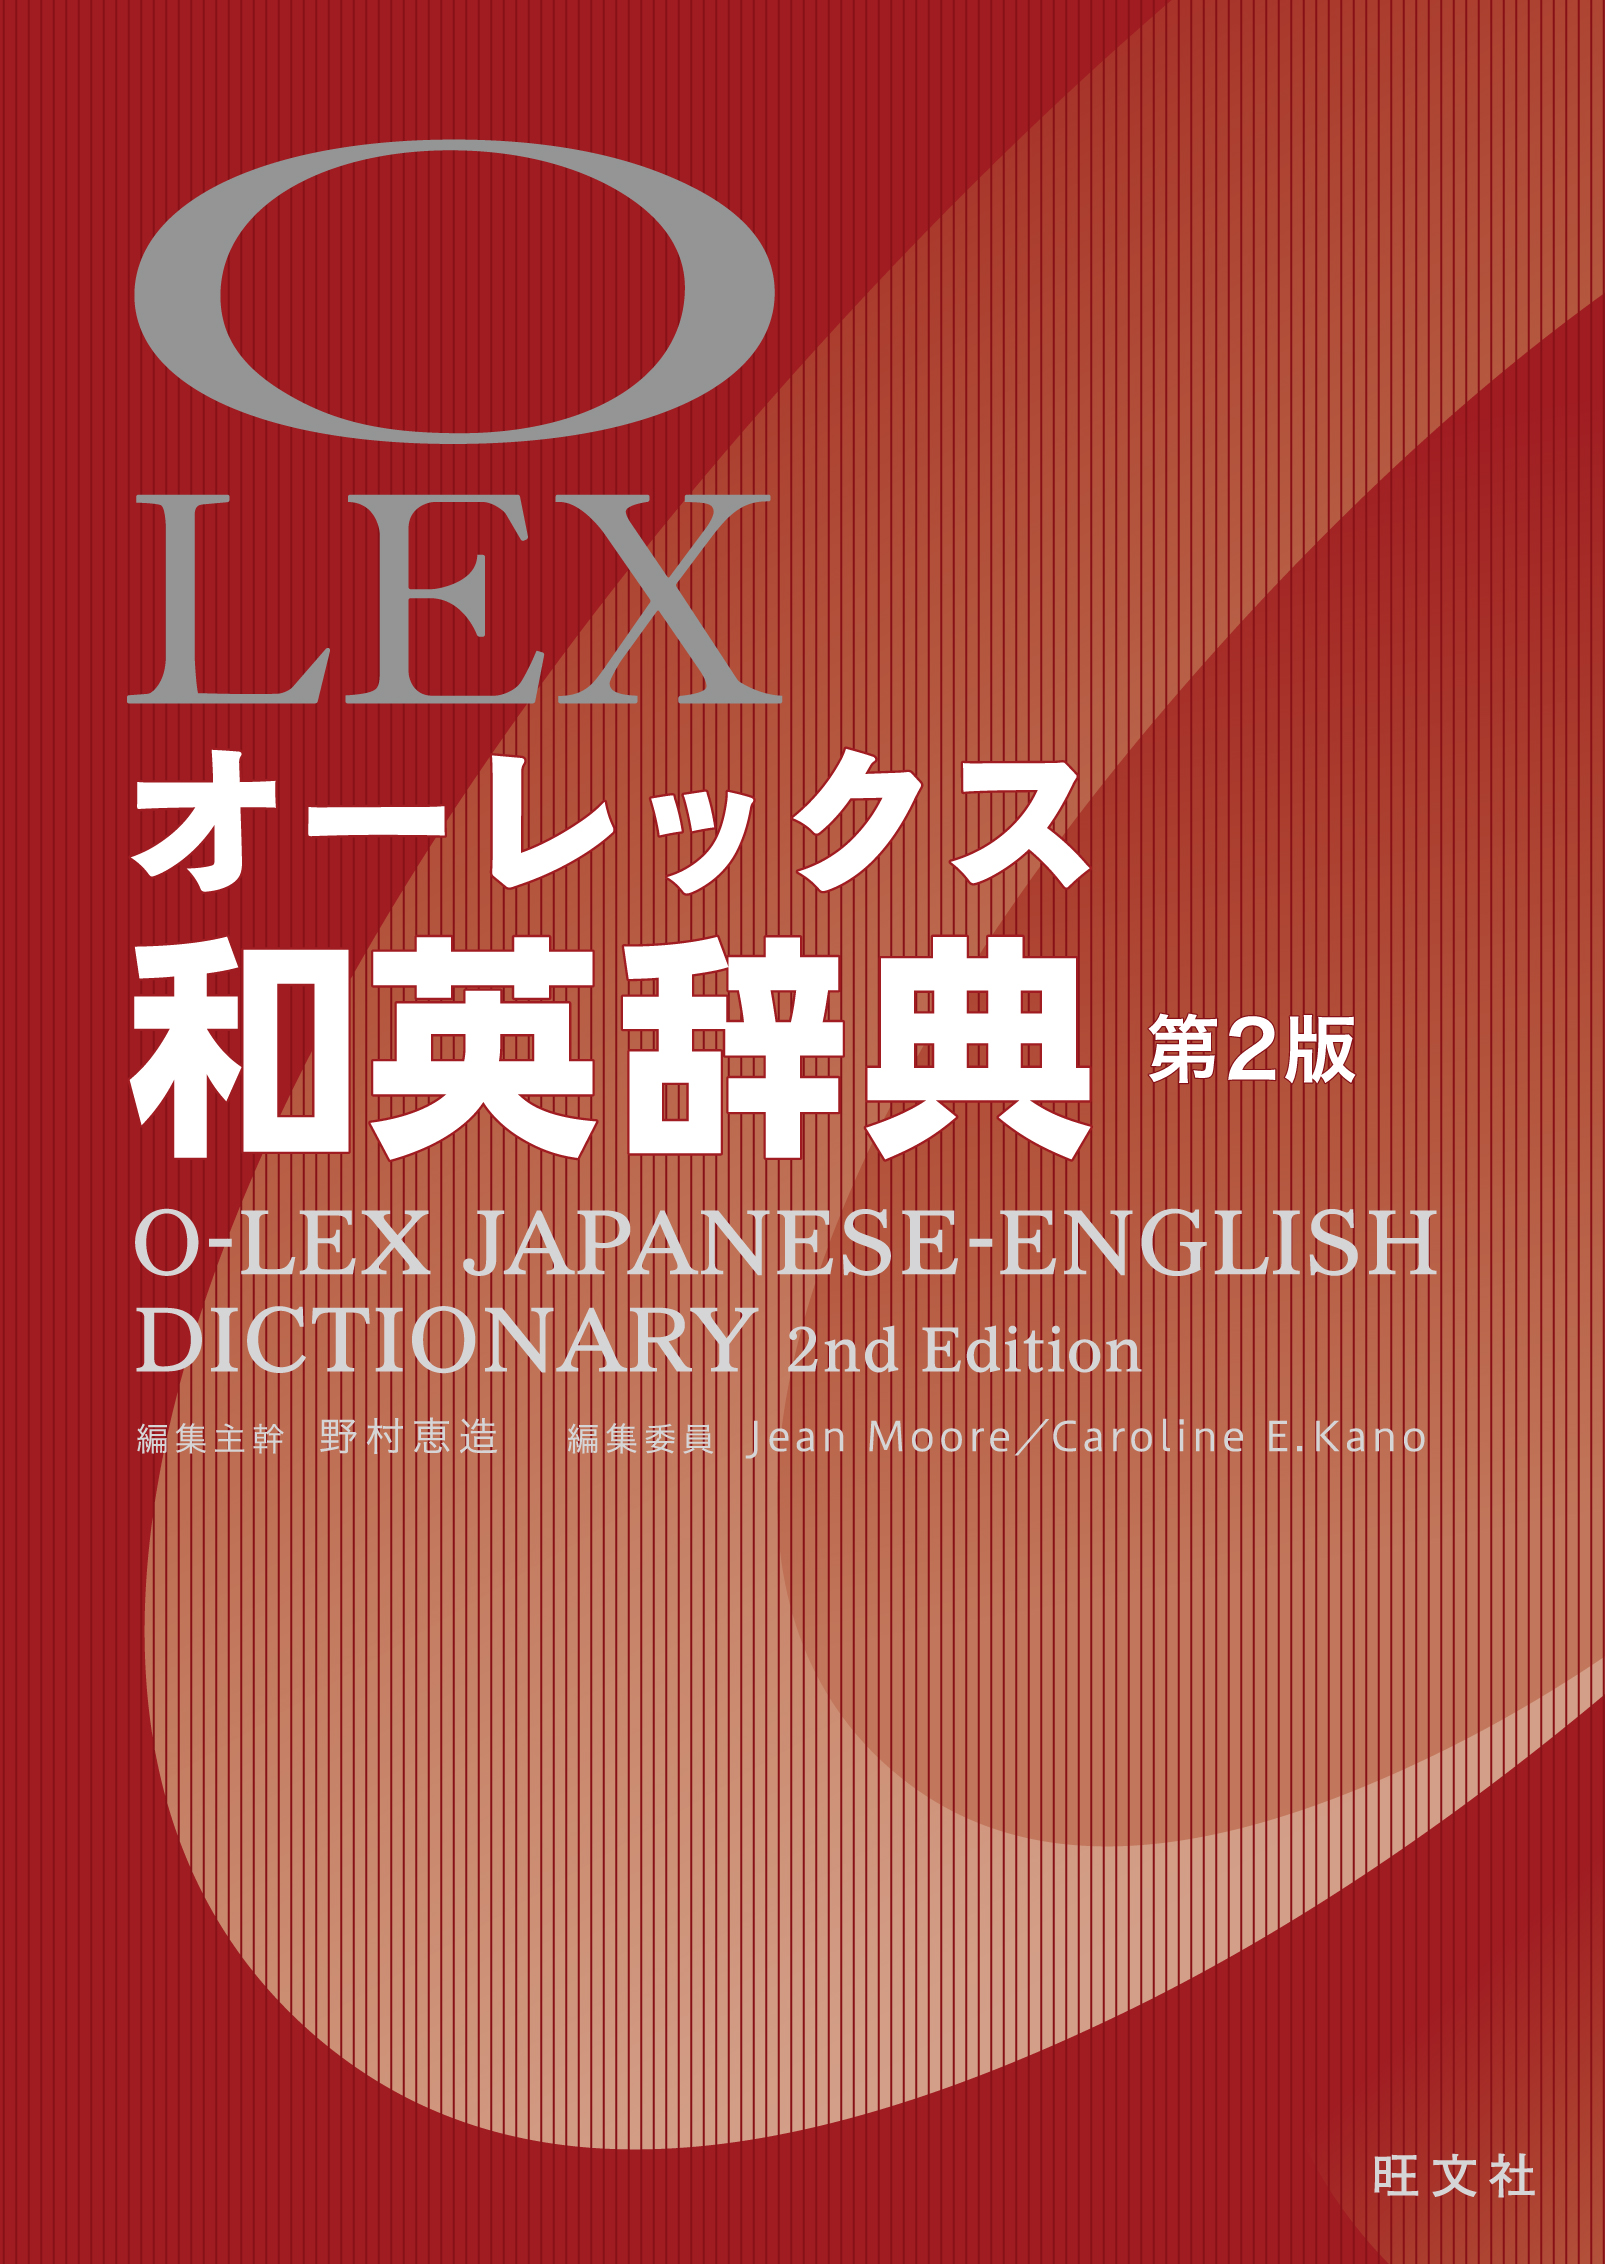 オーレックス和英辞典の商品画像